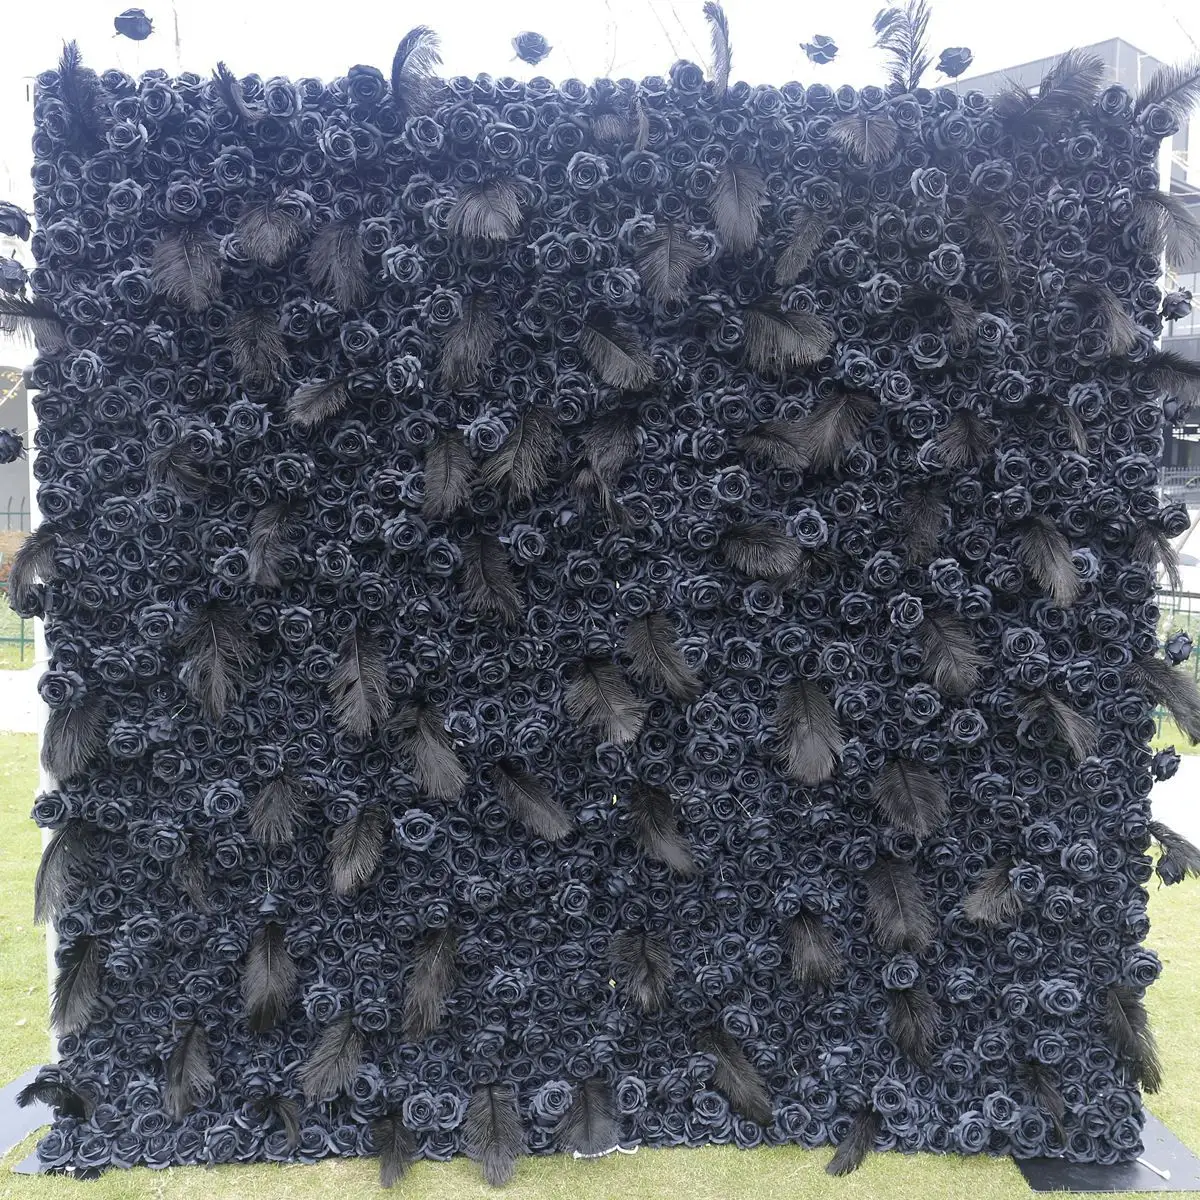 5D黒バラ布背景シミュレーションバラ羽背景壁シミュレーション植物壁